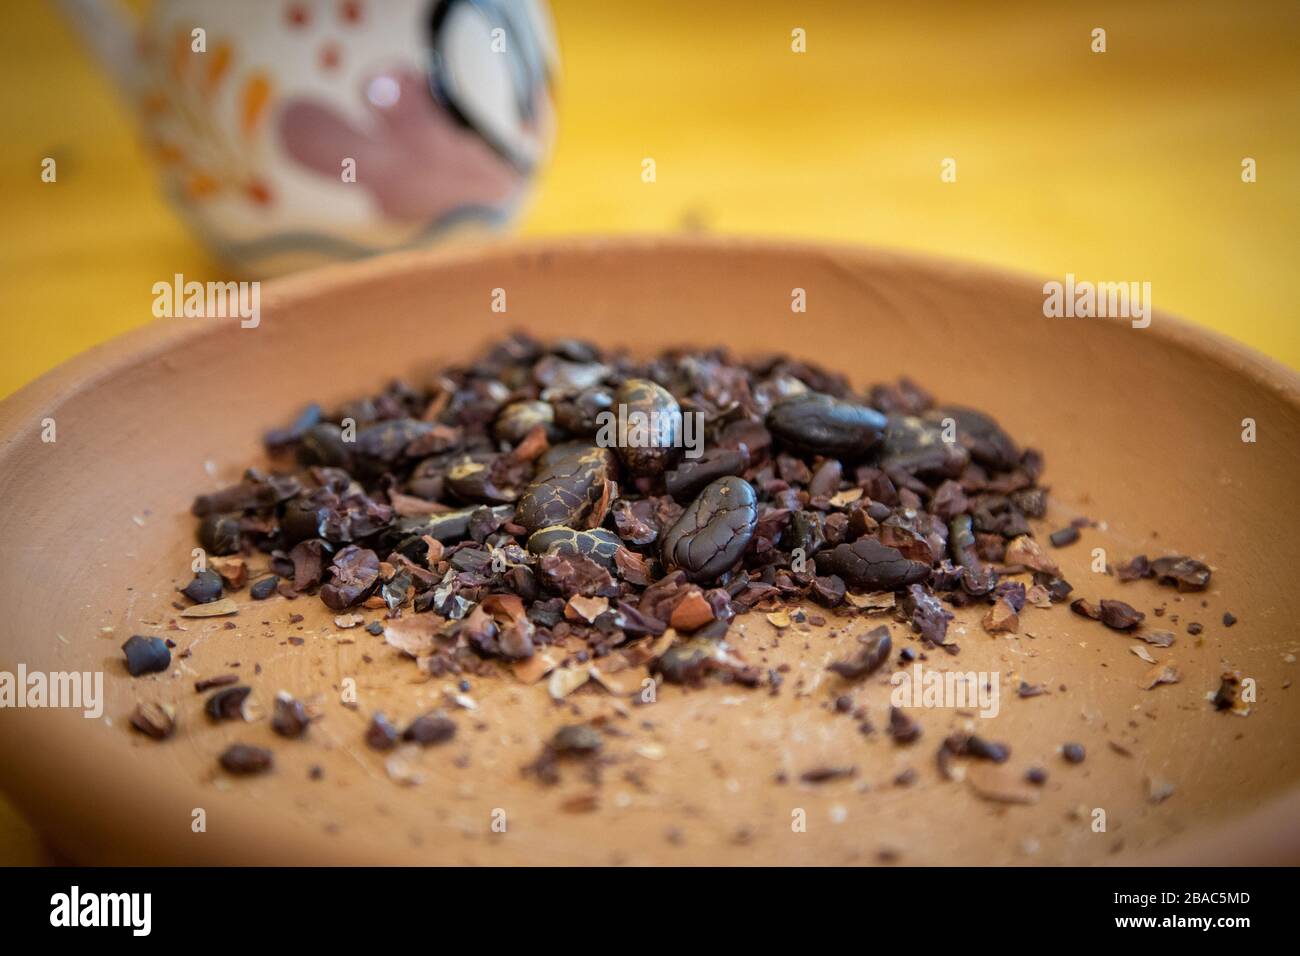 Geschälte mexikanische Kakaobohnen oder Kakao, die bereit sind, zu Pulver gemahlen zu werden, um Schokolade zu machen. Stockfoto